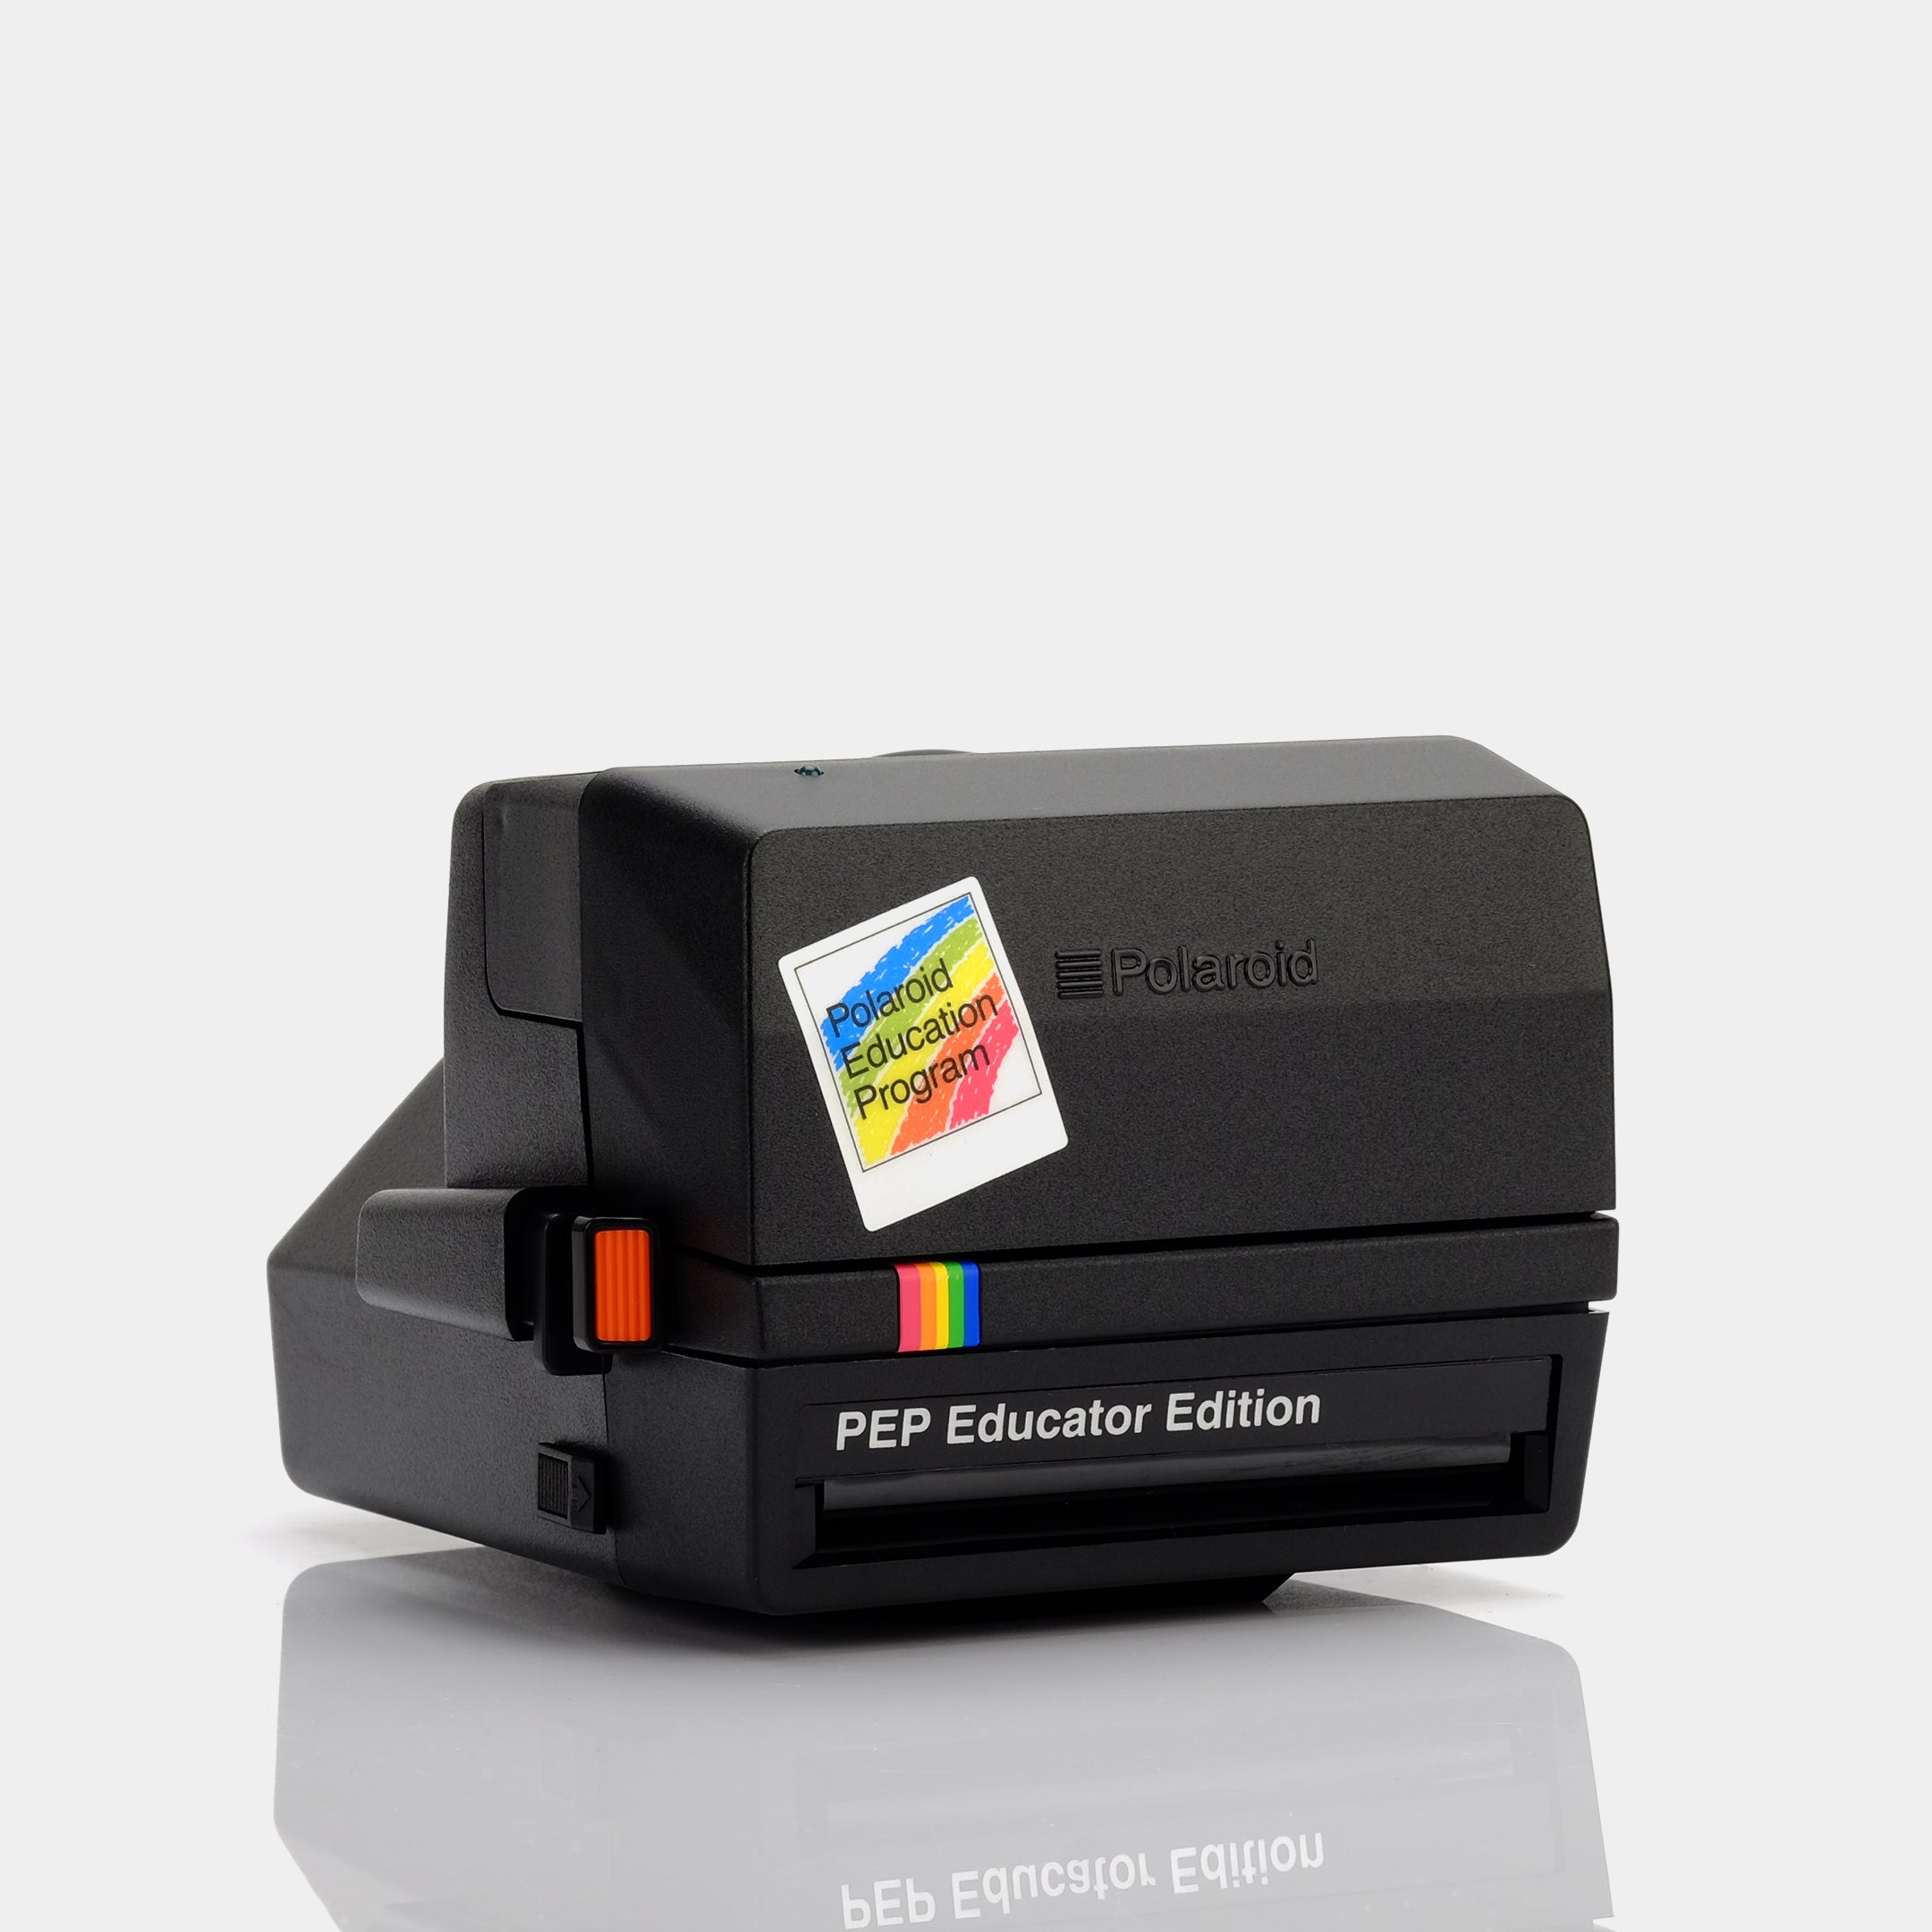 Polaroid 600 PEP Educator Edition Instant Film Camera